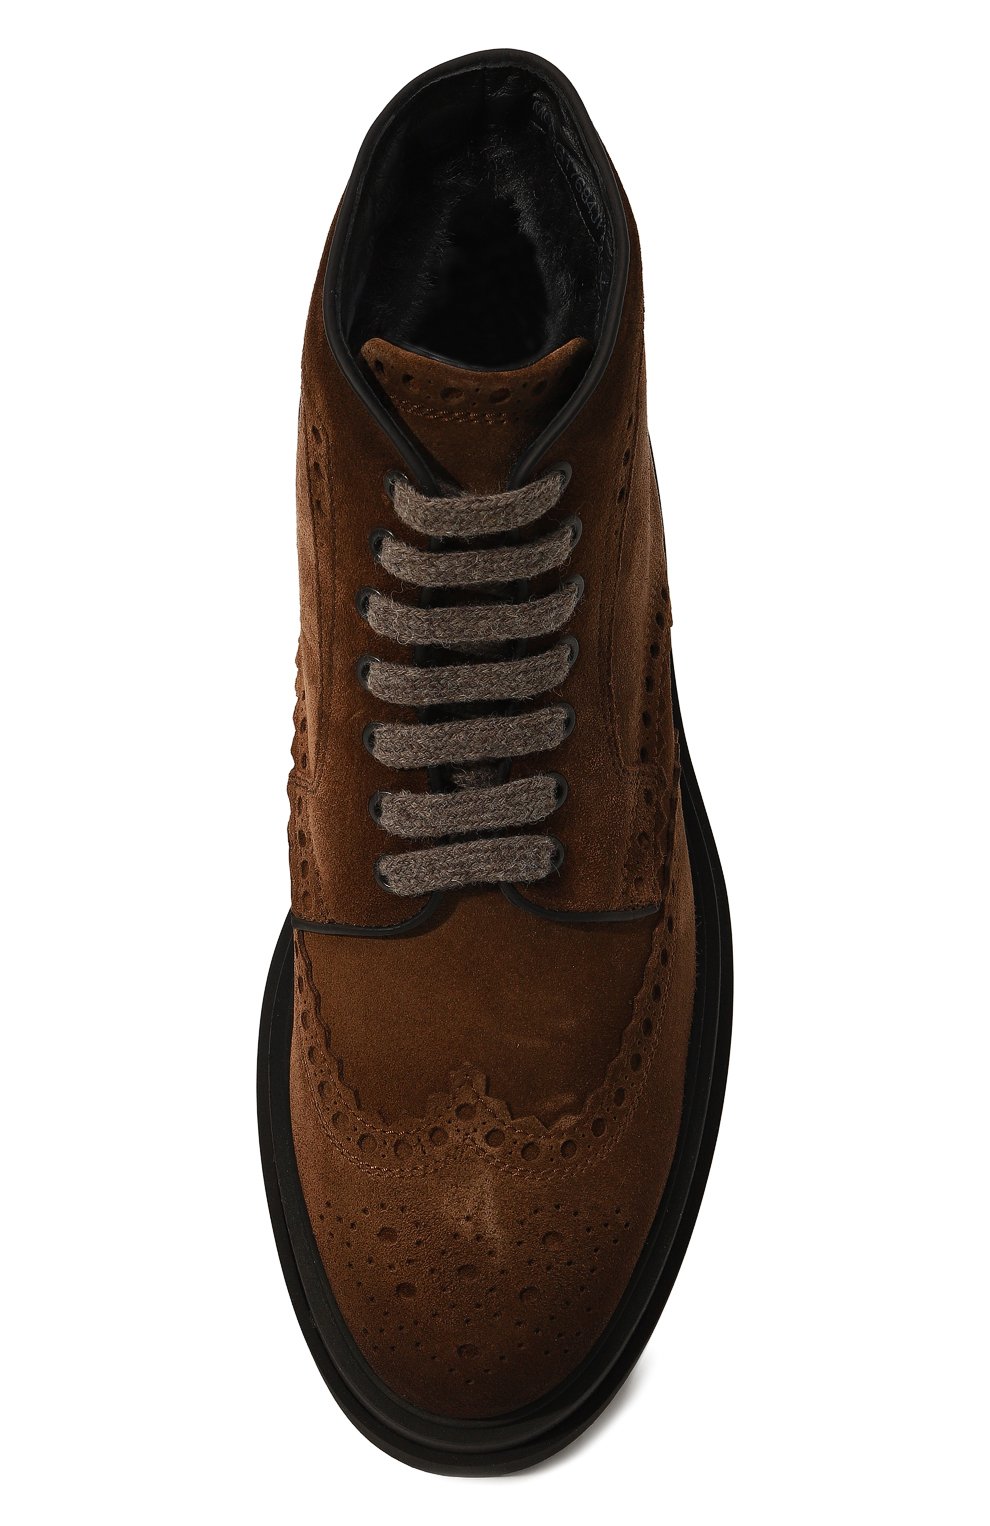 Мужские коричневые замшевые ботинки SANTONI купить в интернет-магазине ЦУМ,арт. MGMG17684JK4AGXX